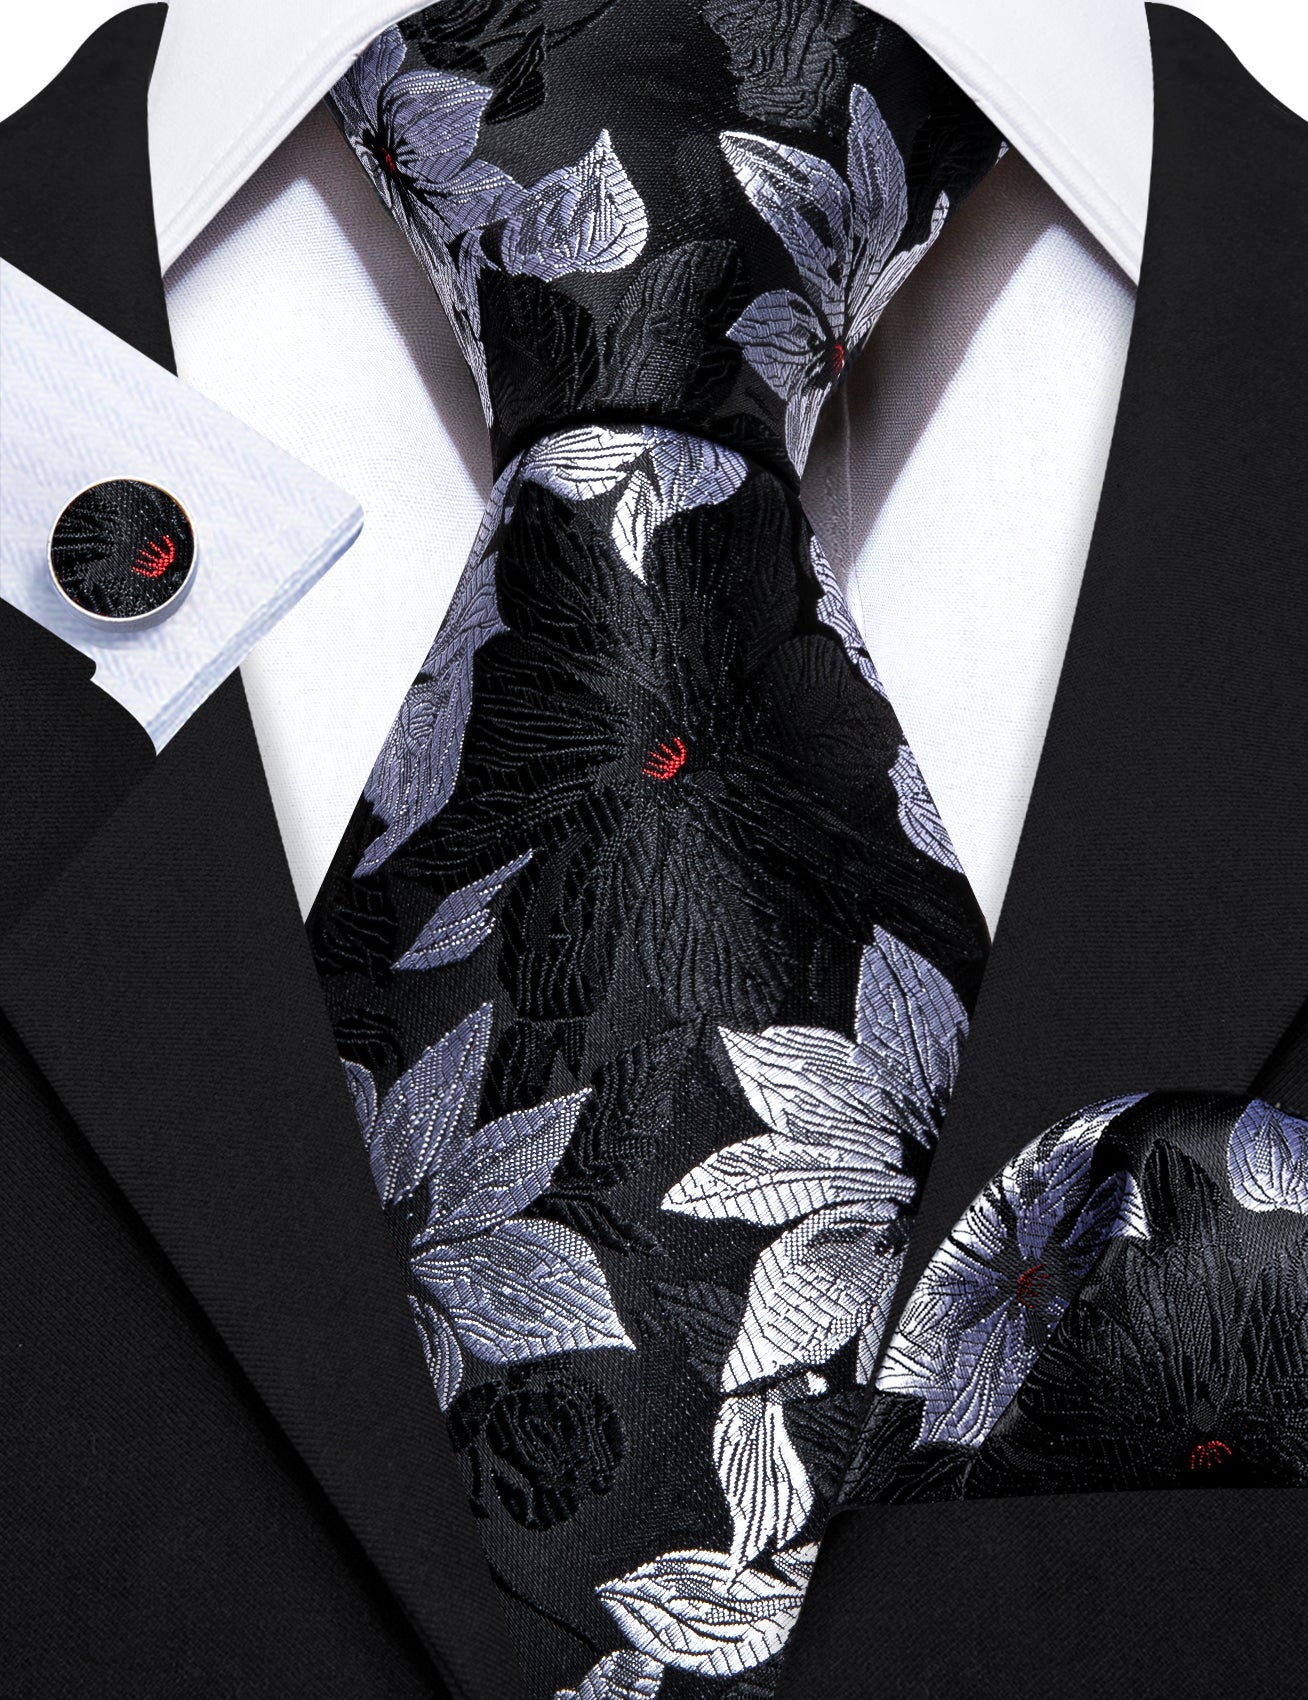 Black Silver Flower Silk Tie Handkerchief Cufflinks Set